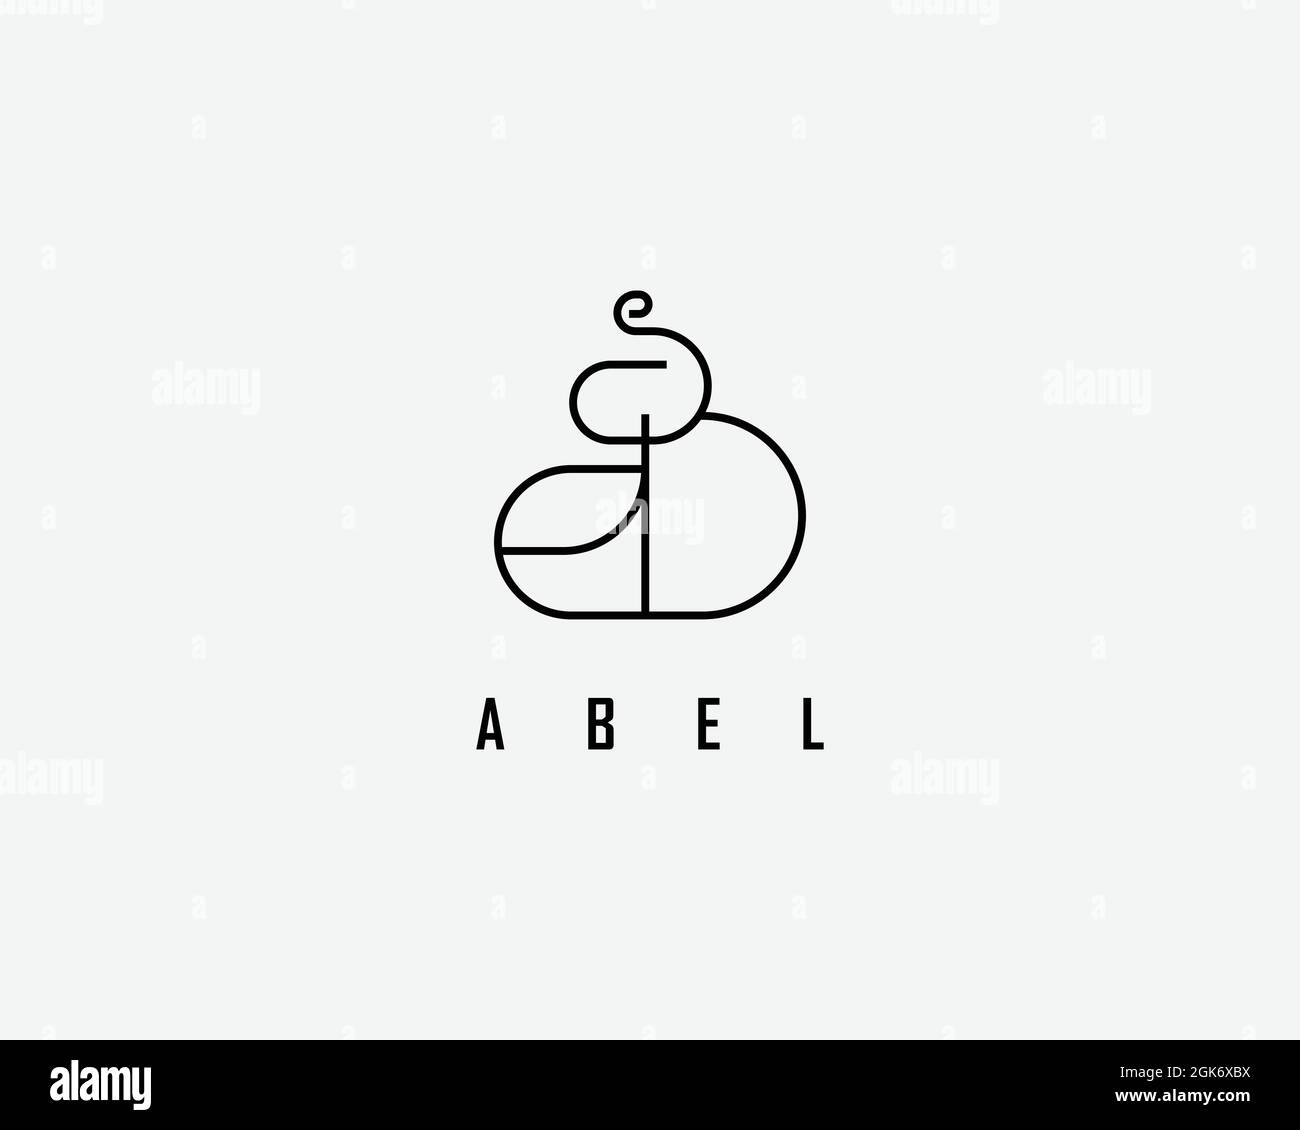 logo name Abel usable logo design for private logo, business name card web icon, social media icon Stock Vector